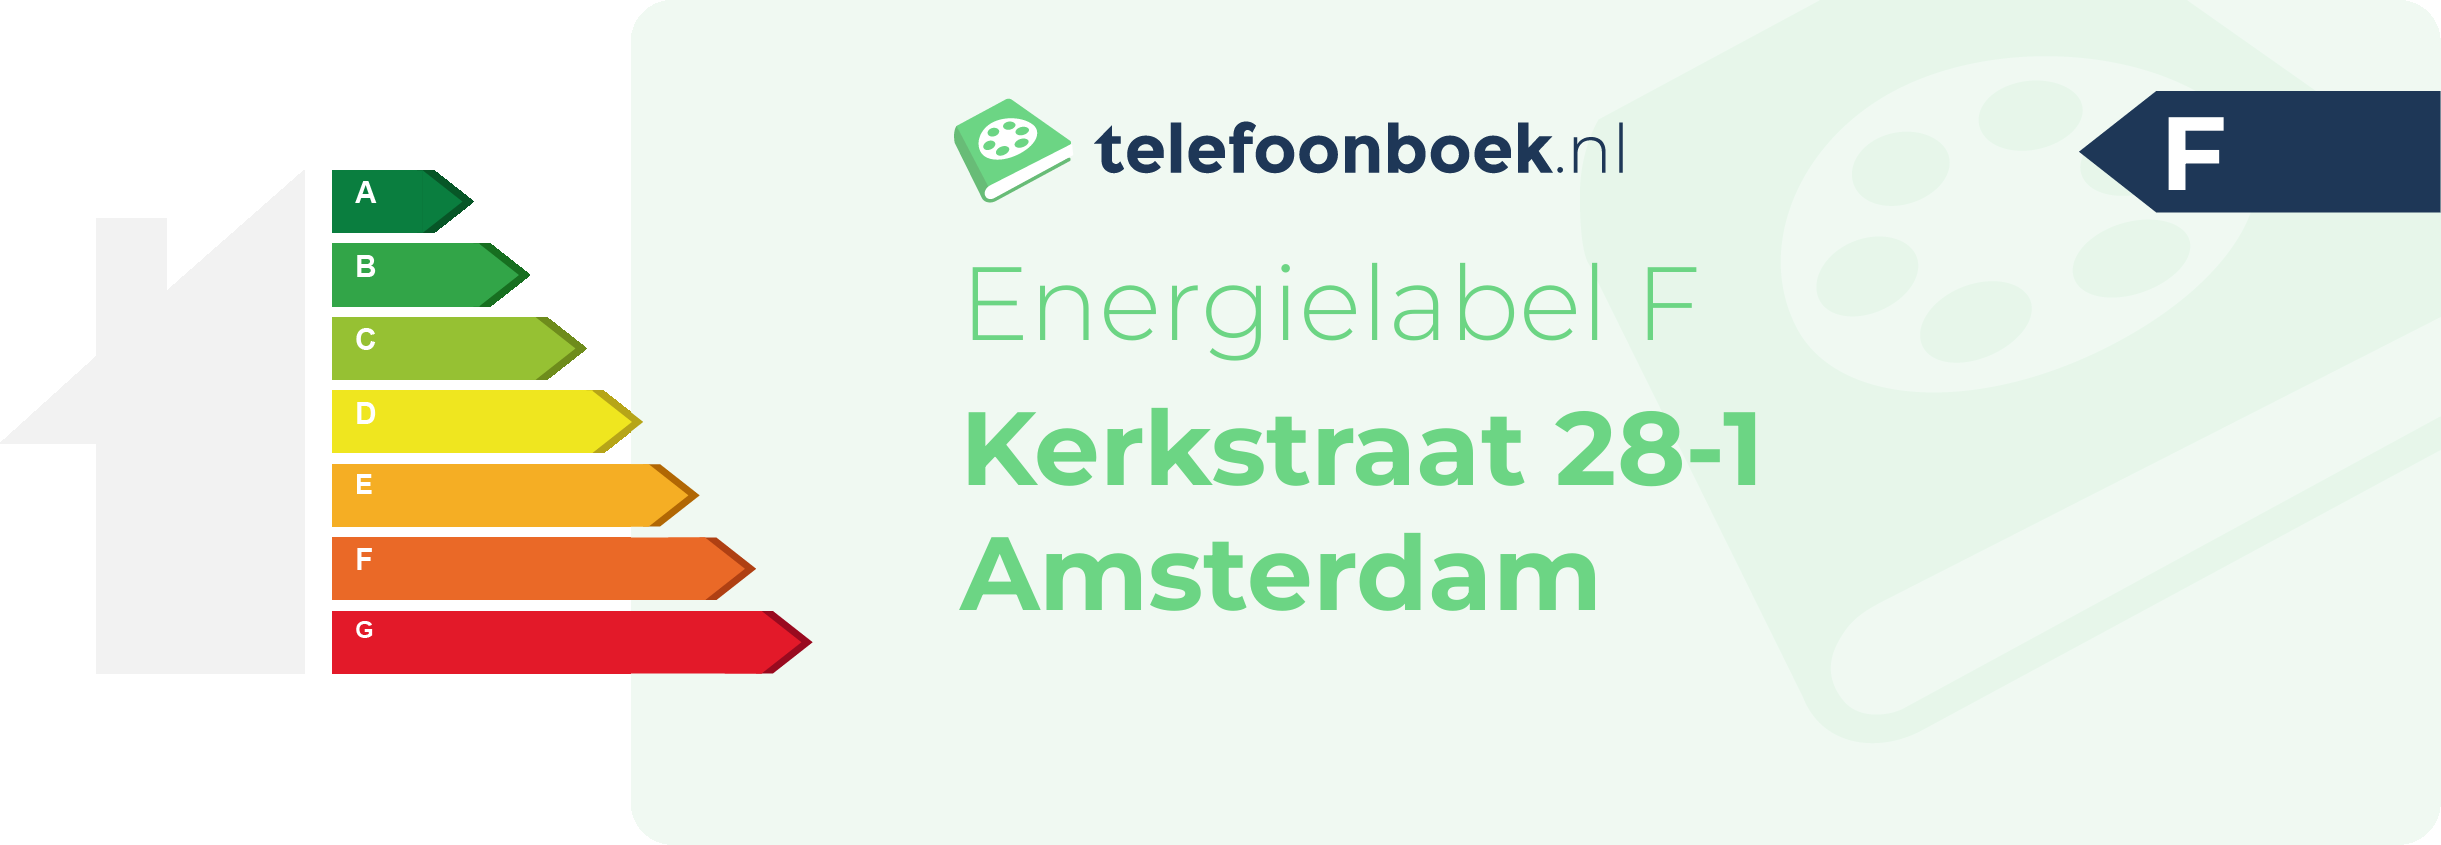 Energielabel Kerkstraat 28-1 Amsterdam